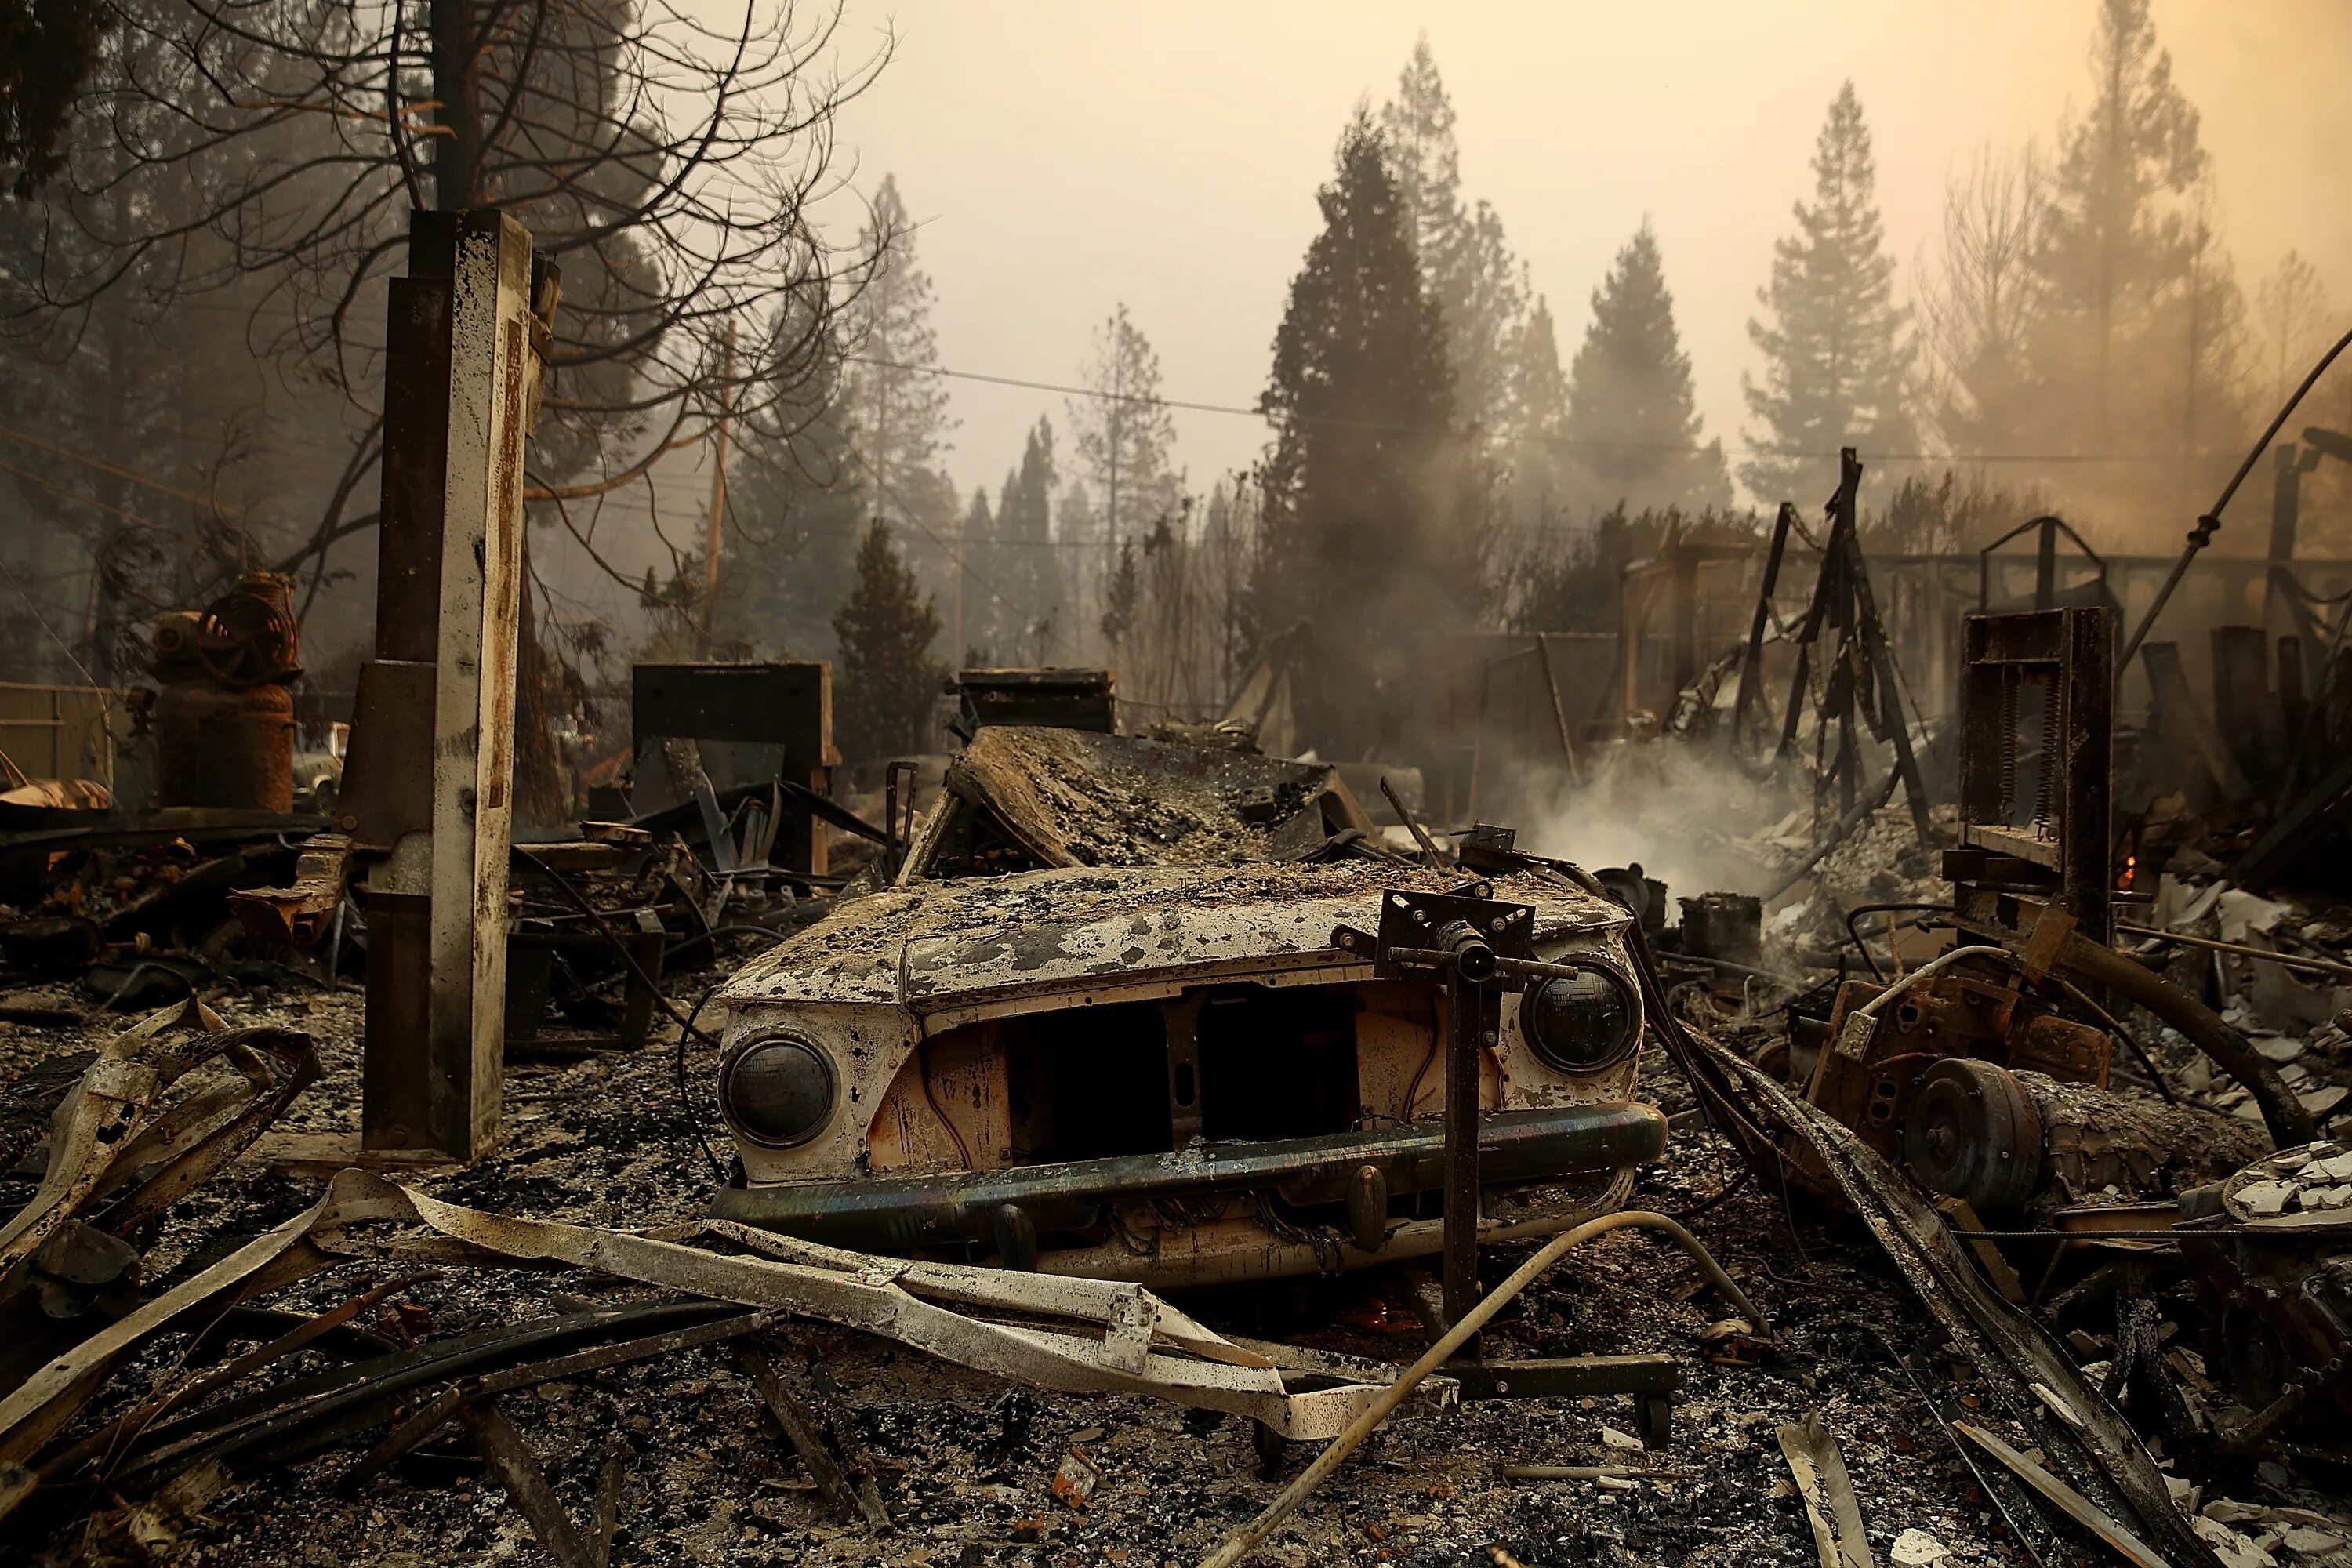 После того как сгорел. Лес после пожара. Развалины после пожара. Пепелище в лесу.